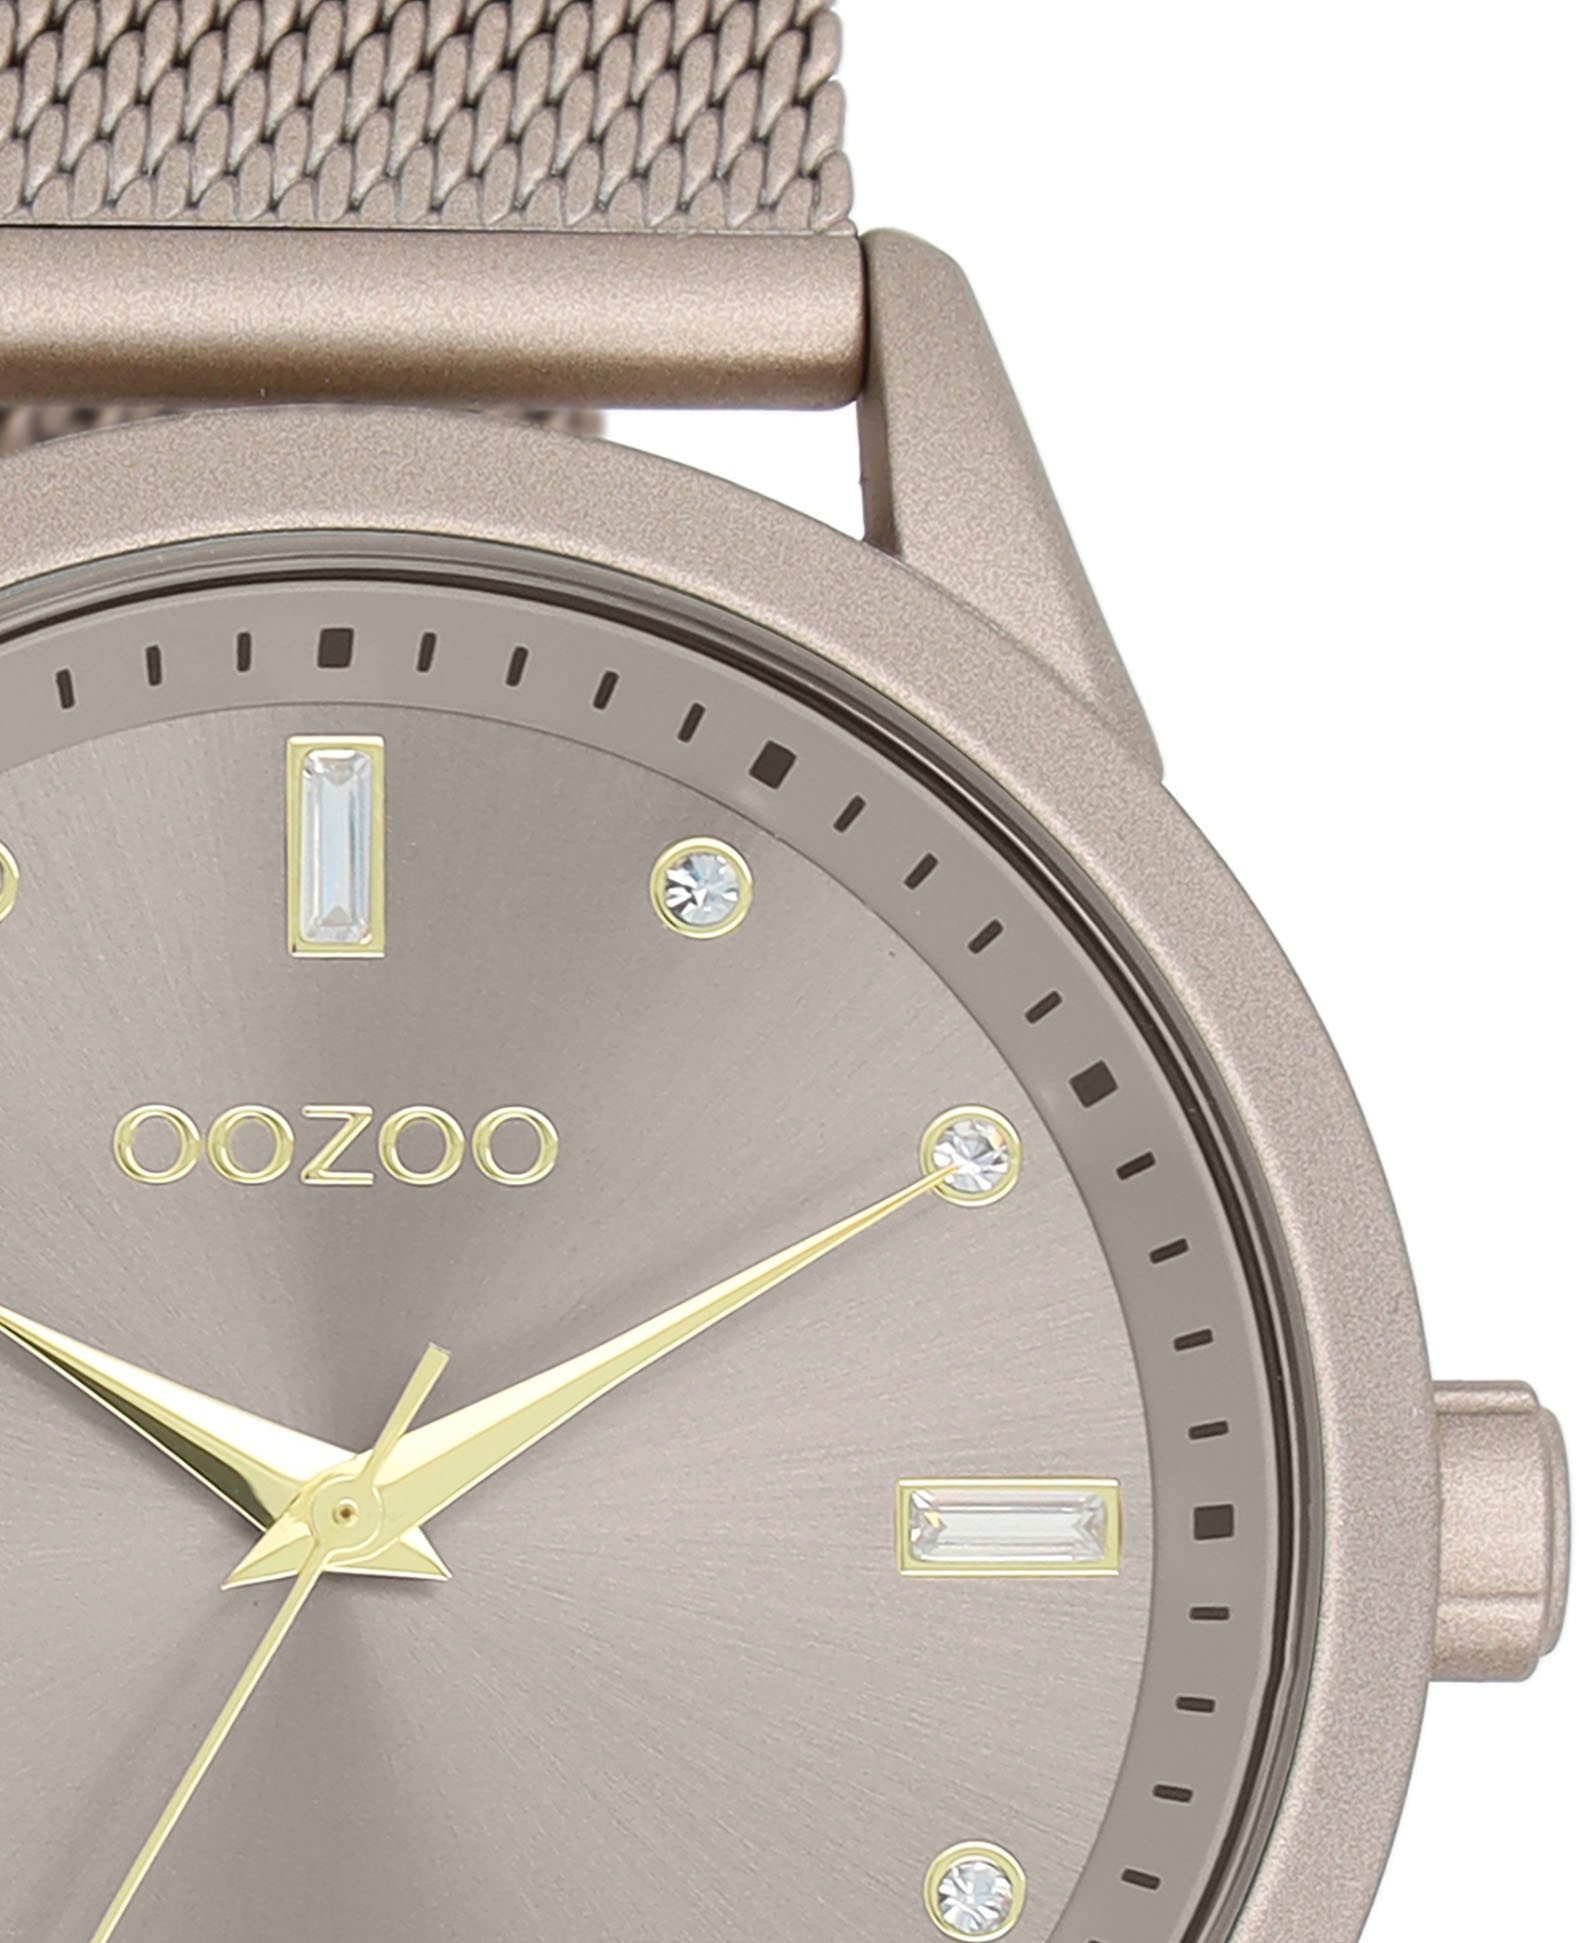 OOZOO Quarzuhr, Armbanduhr, Damenuhr, IP-Beschichtung, mit Zirkonia-Steinen (synth.)